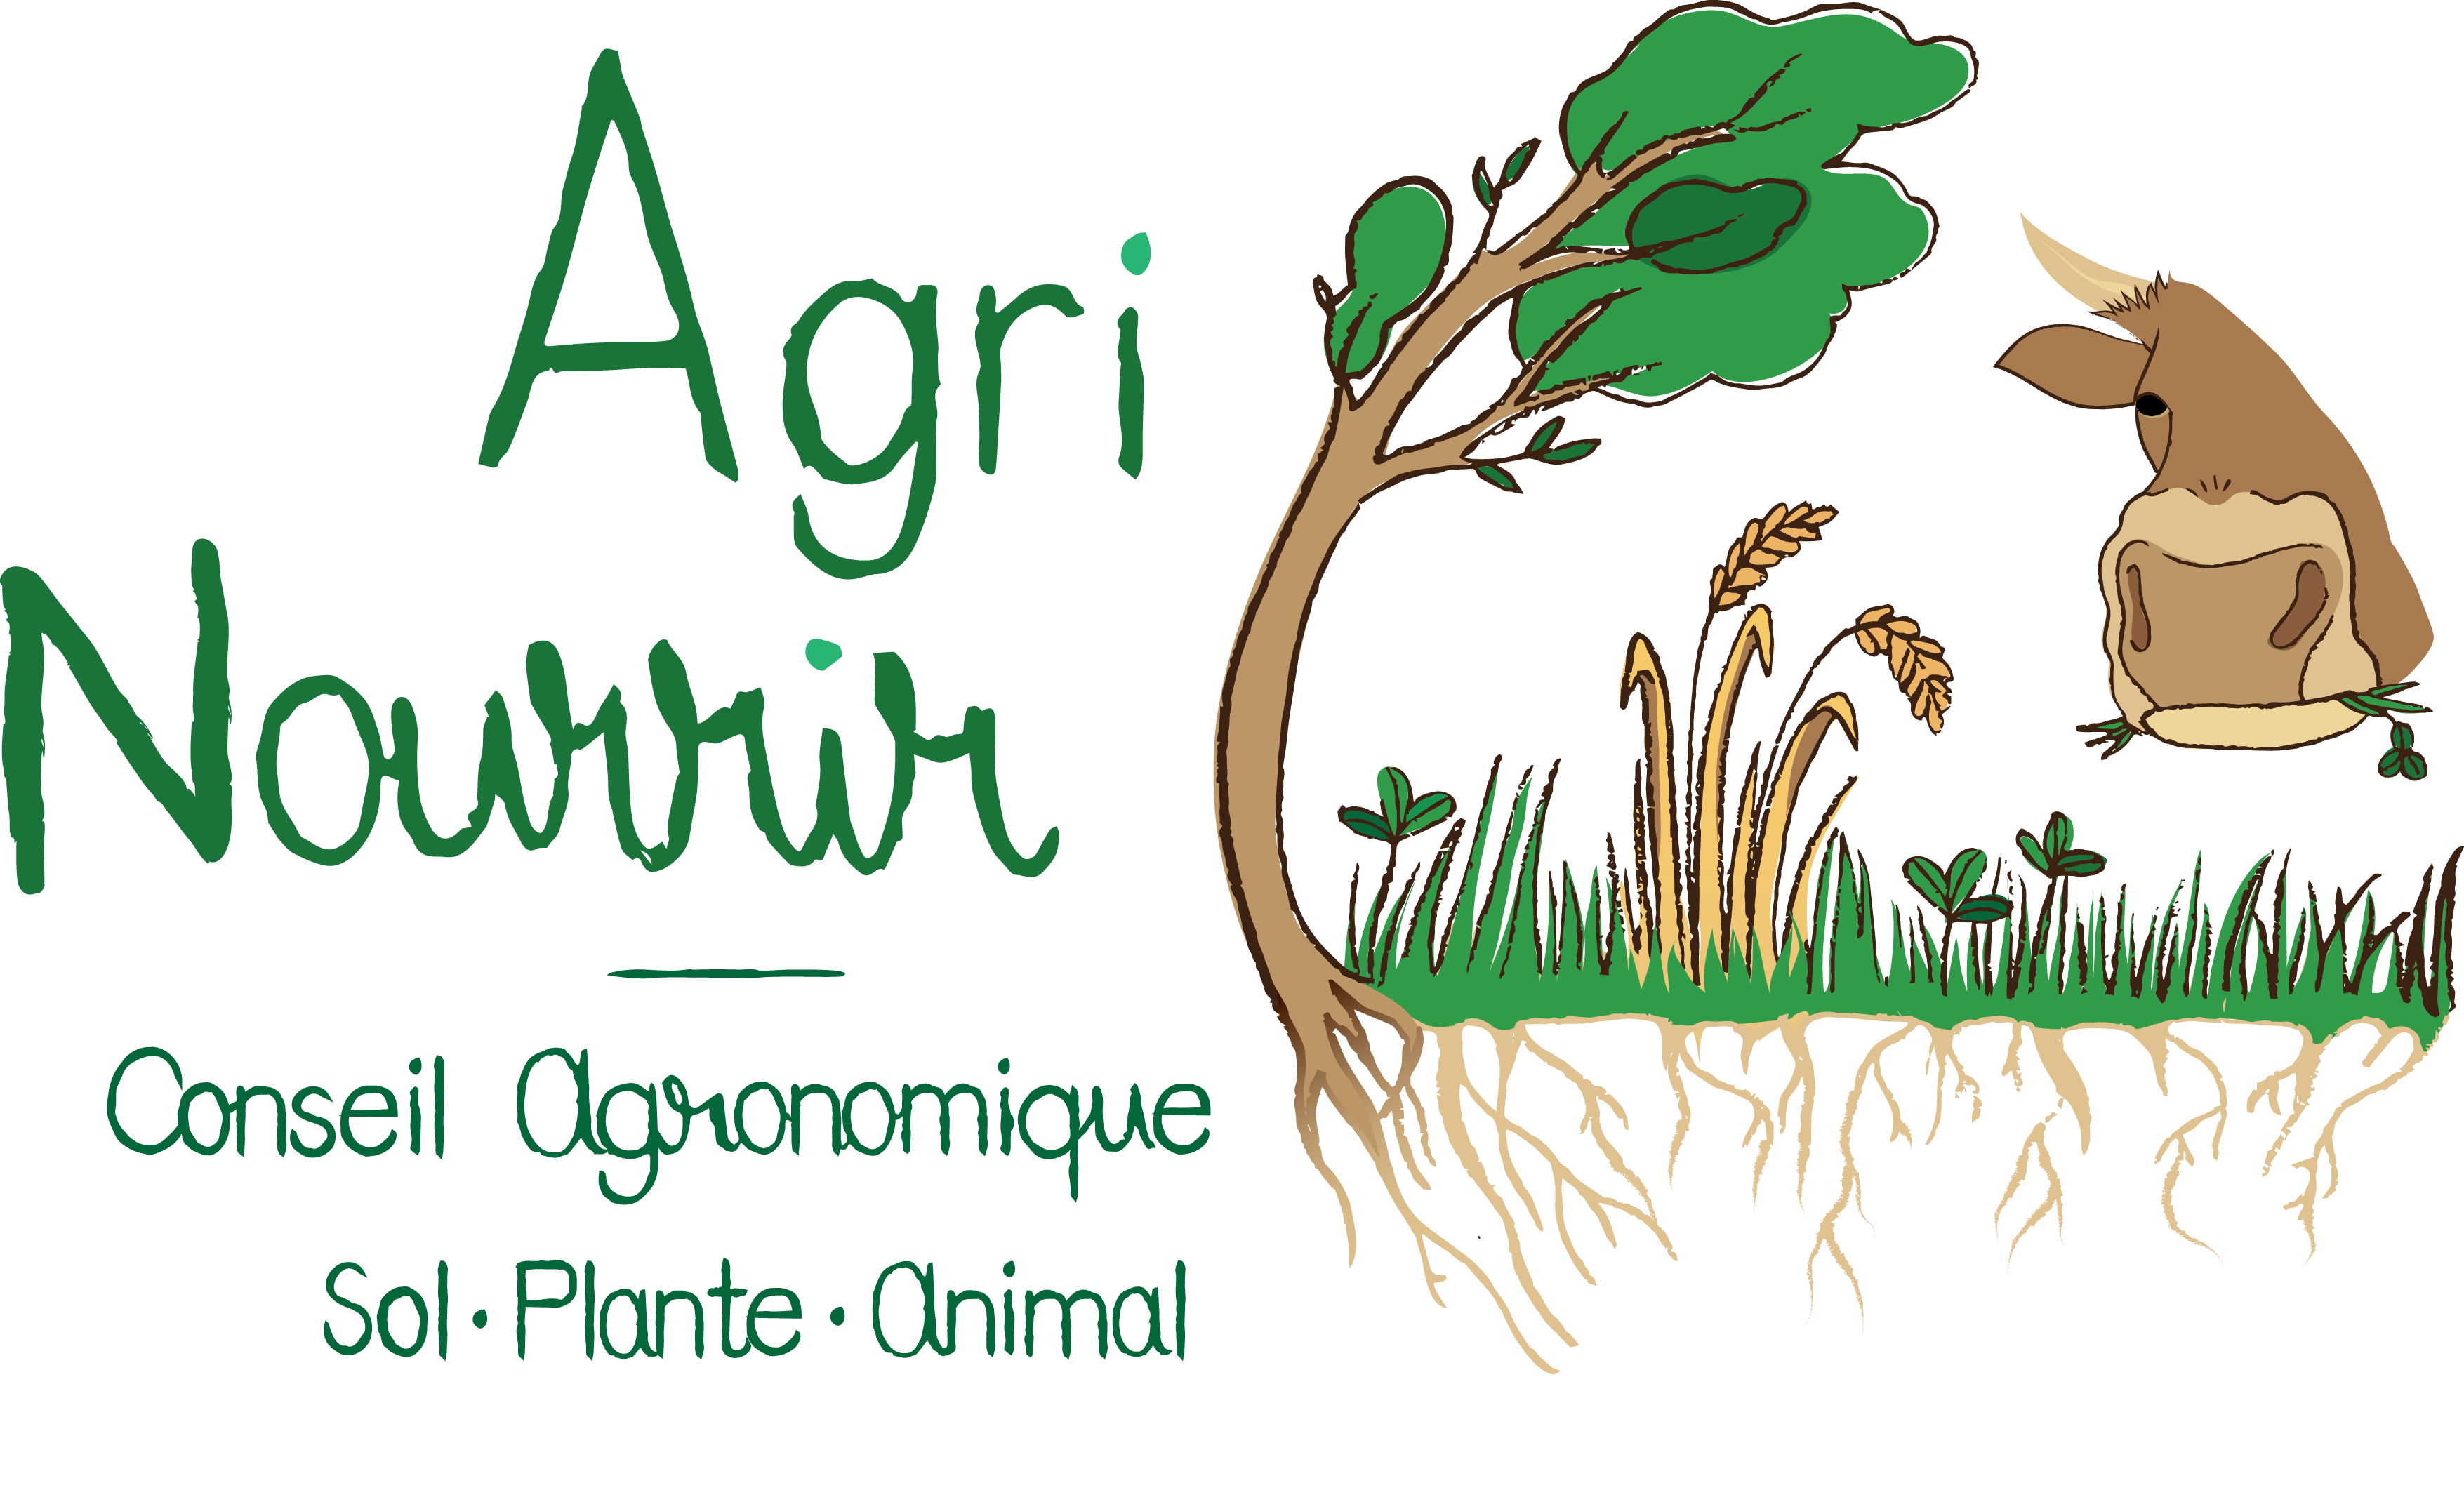 AgriNourrir